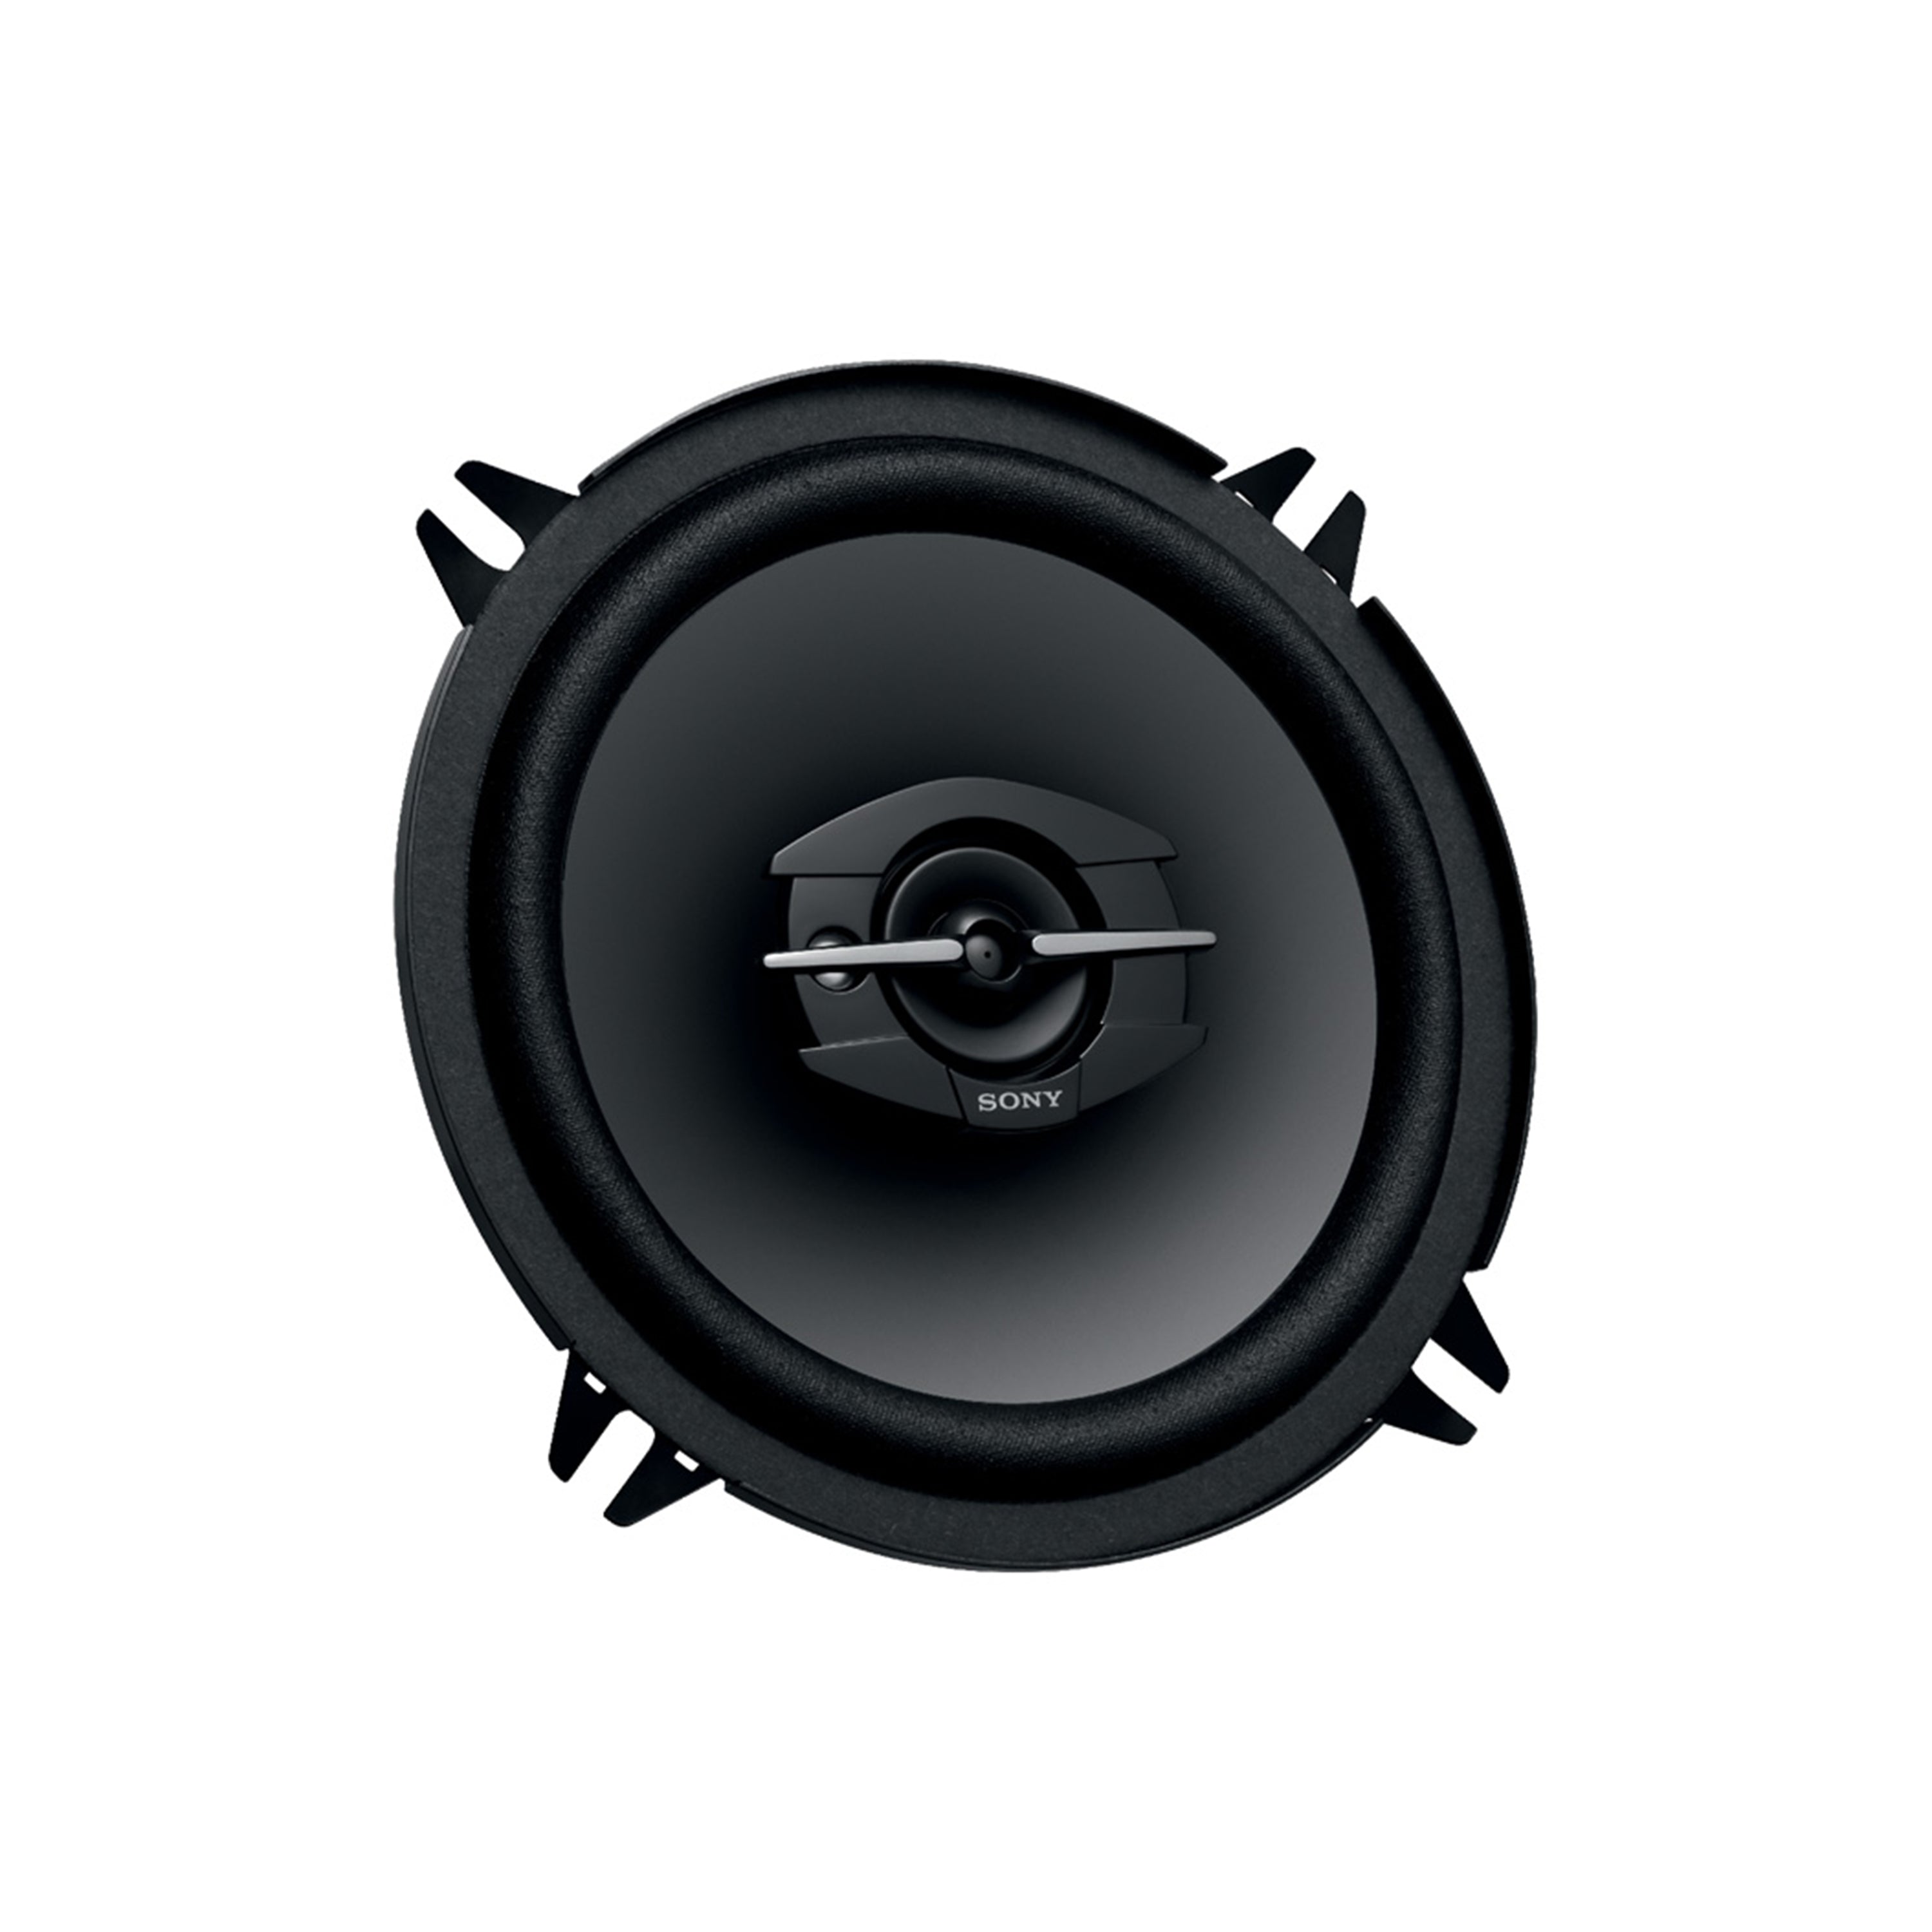 XS-GTF1339 5.25" 3-Way Coaxial Speakers